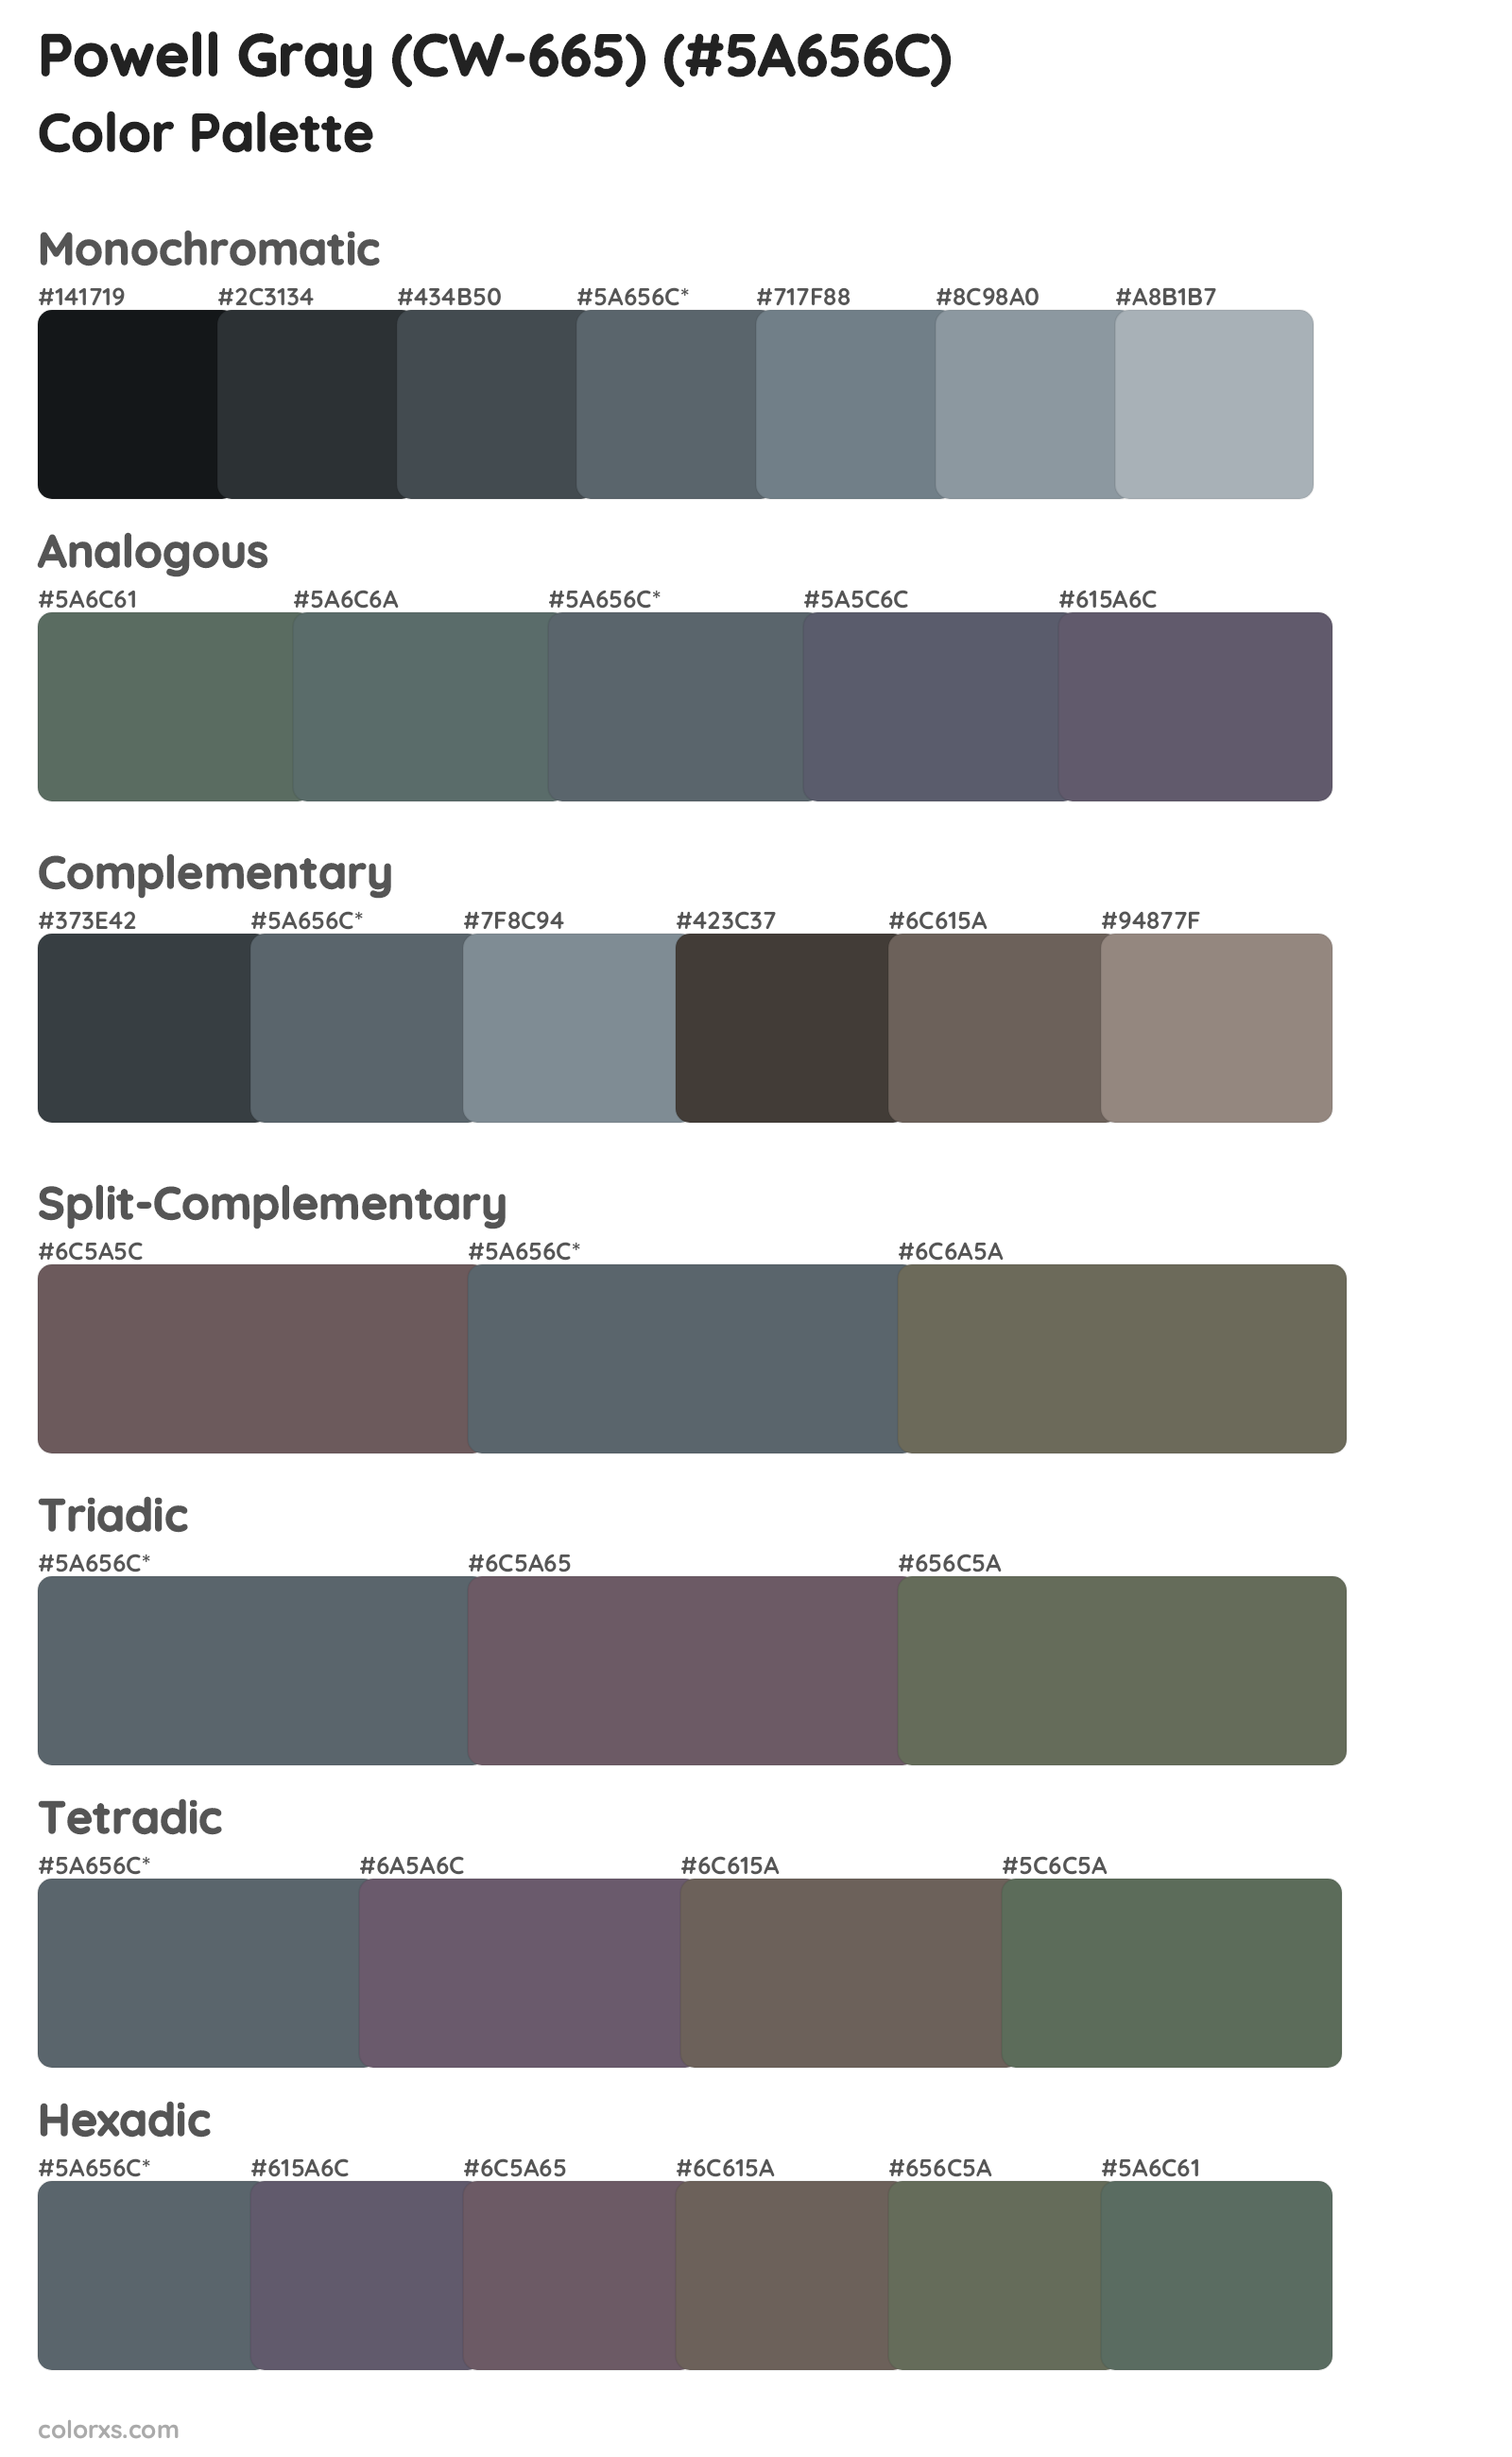 Powell Gray (CW-665) Color Scheme Palettes